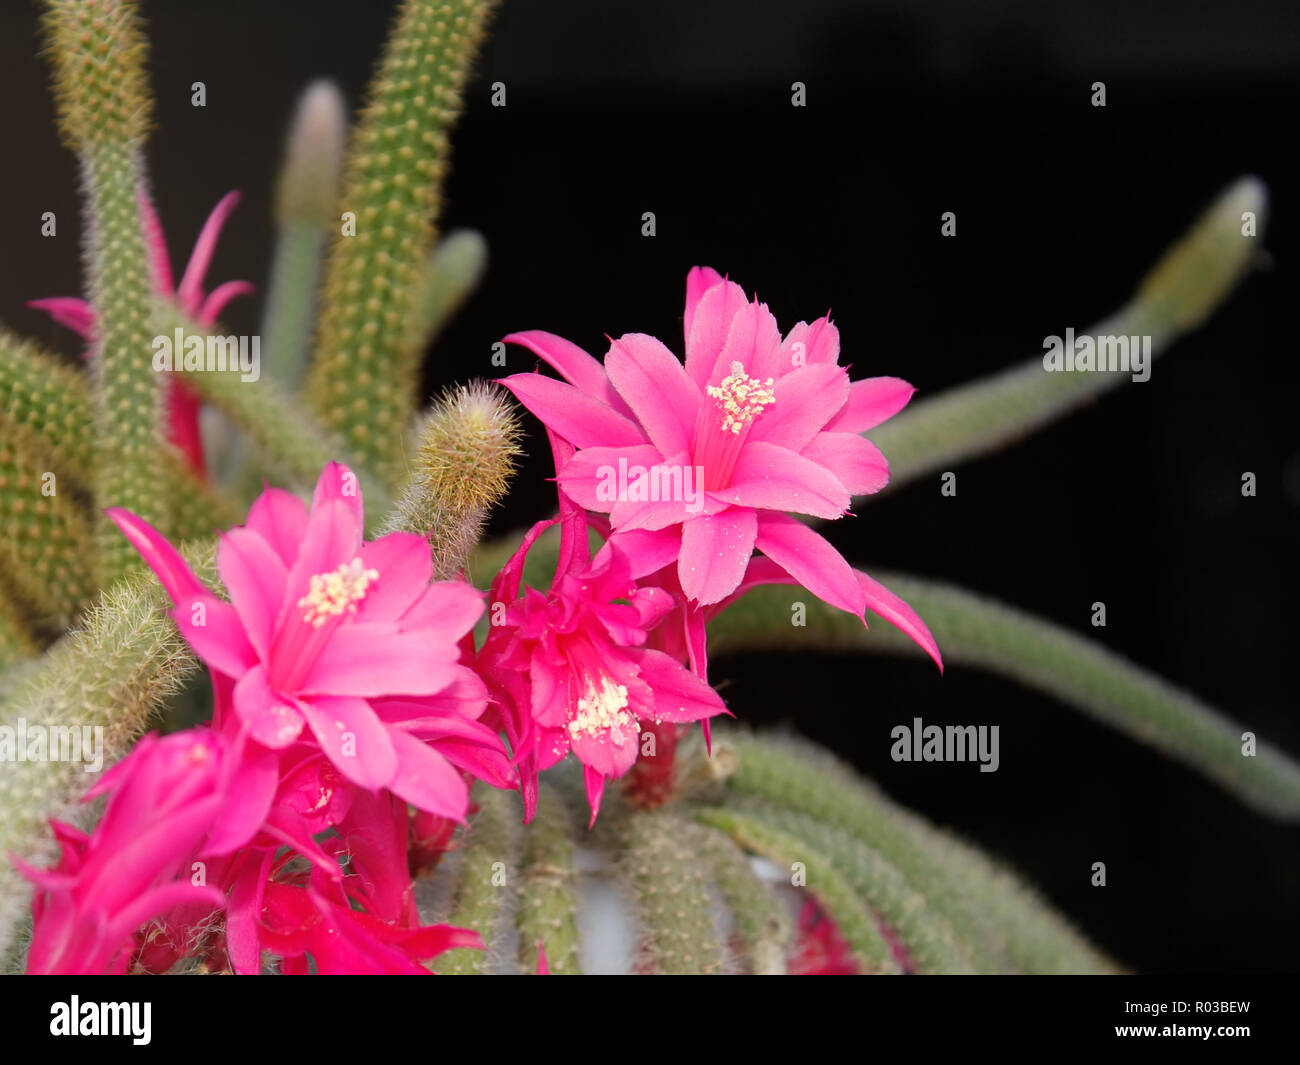 Rat Tail Cactus flowering on the dark background. Scientific Name: Disocactus flagelliformis (Latin), Family: Cactaceae Stock Photo